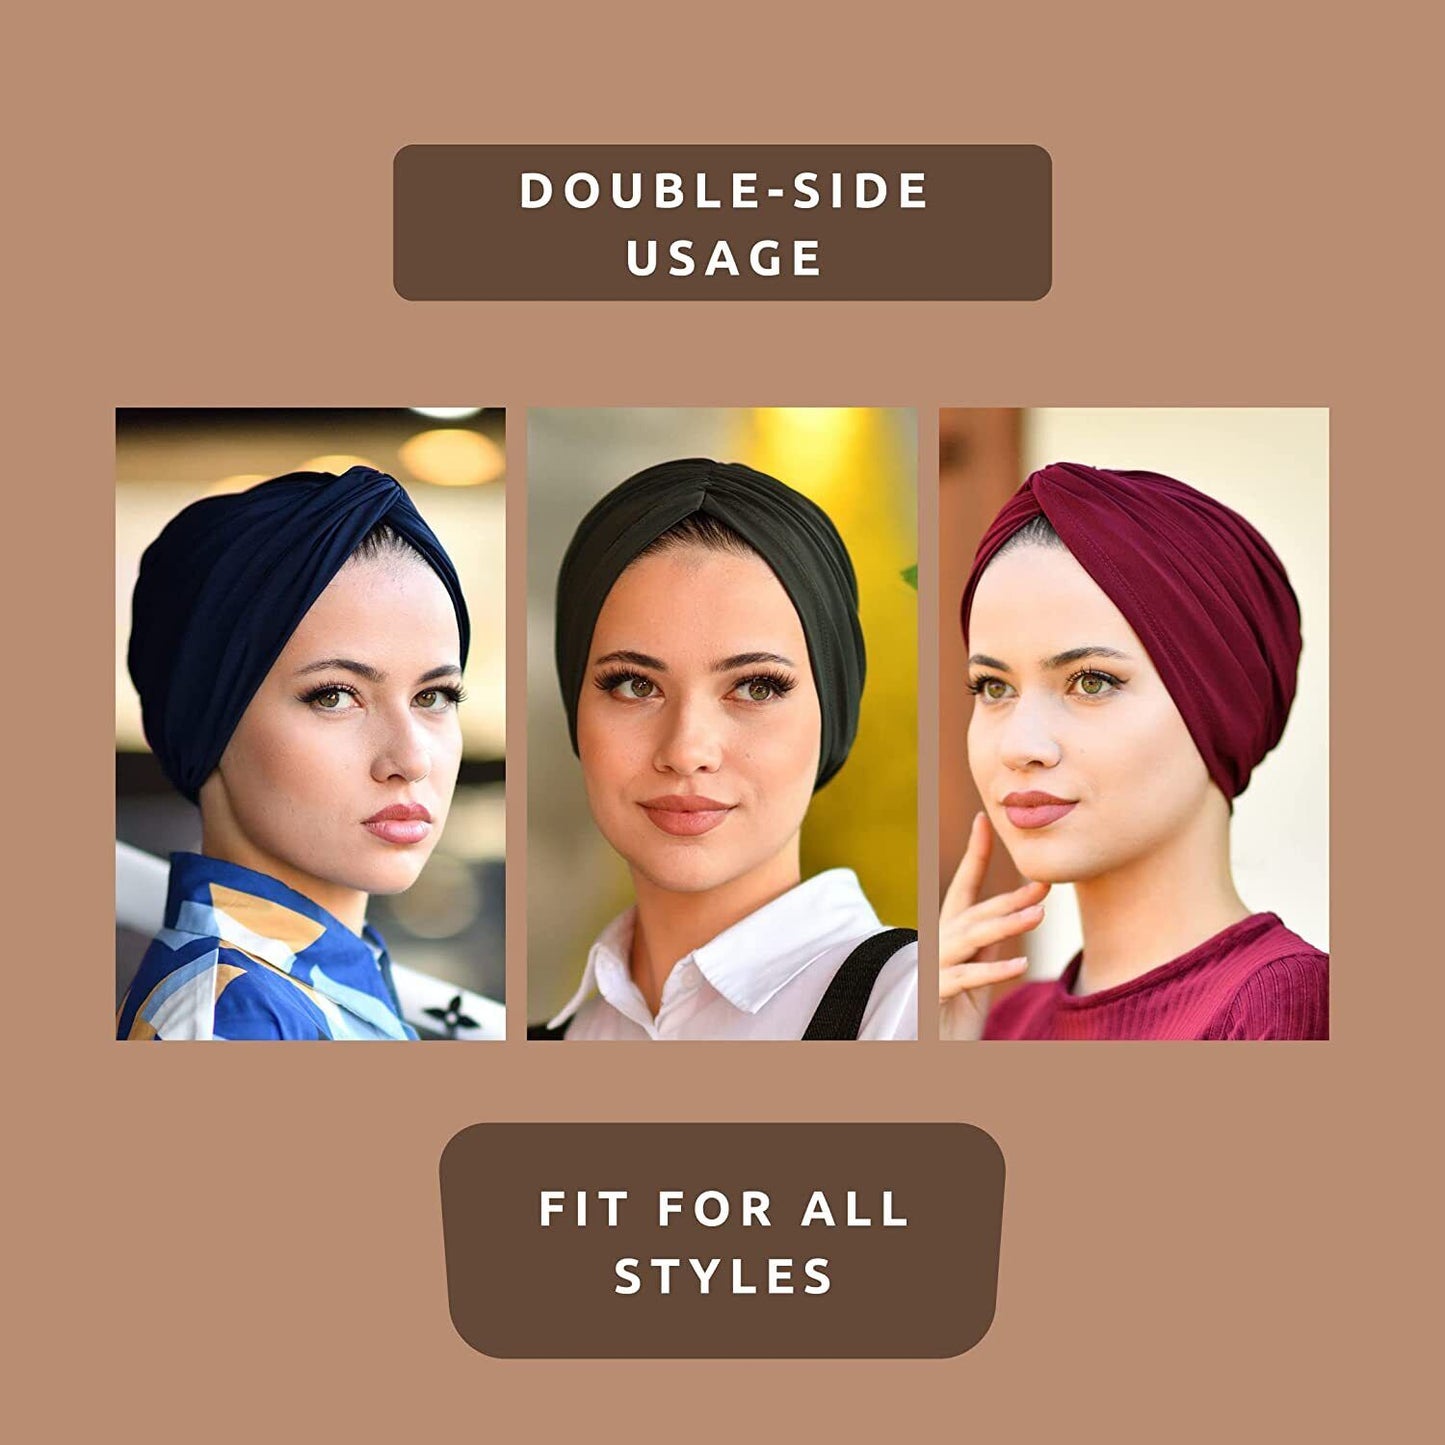 Black Turbans for Women-Hijab Undercap-Hijab Underscarf-Hijab Cap-Instant Hija